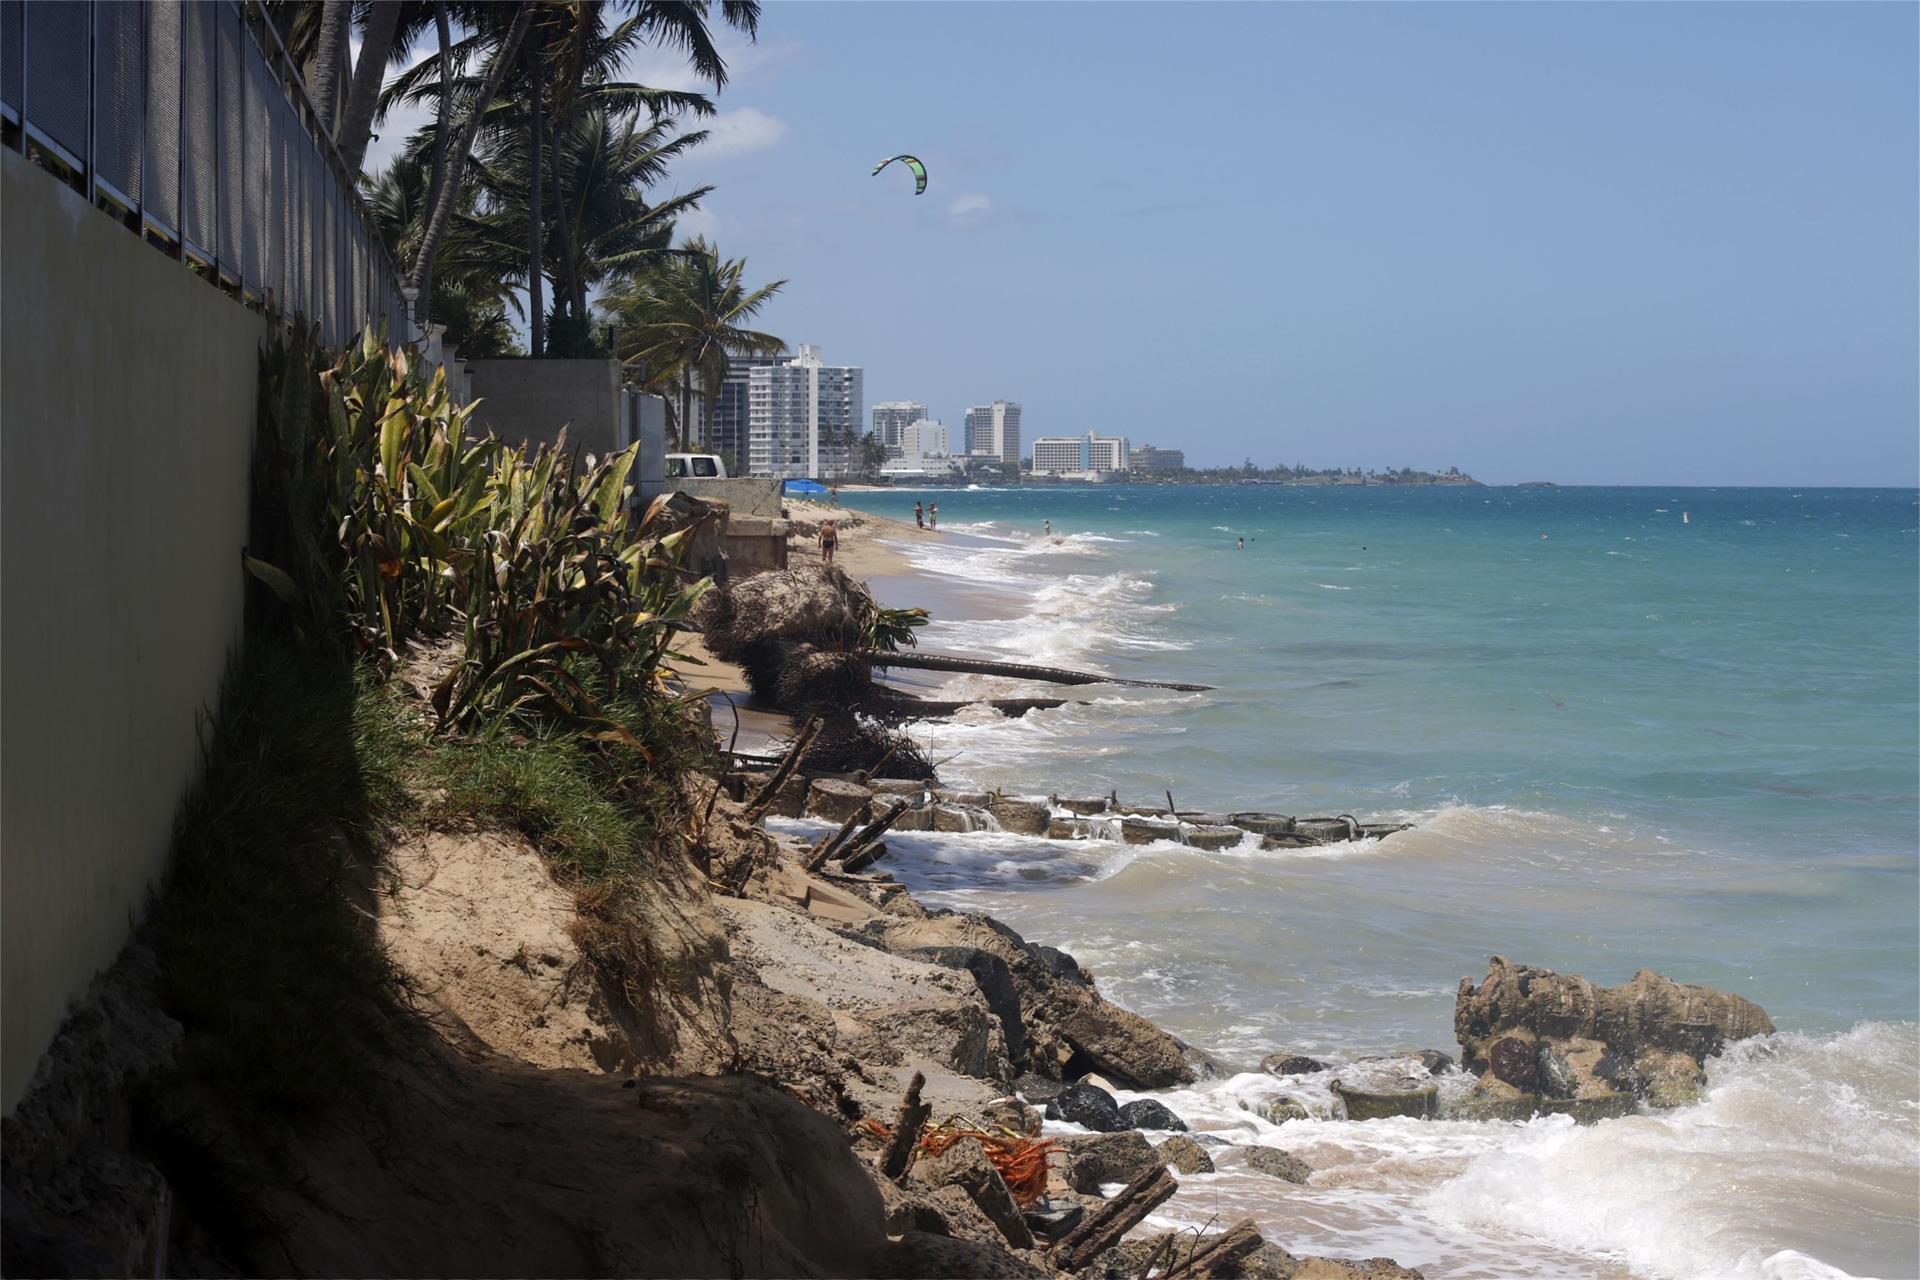 Imagen de archivo que muestra una playa de Puerto Rico. EFE/Thais Llorca
